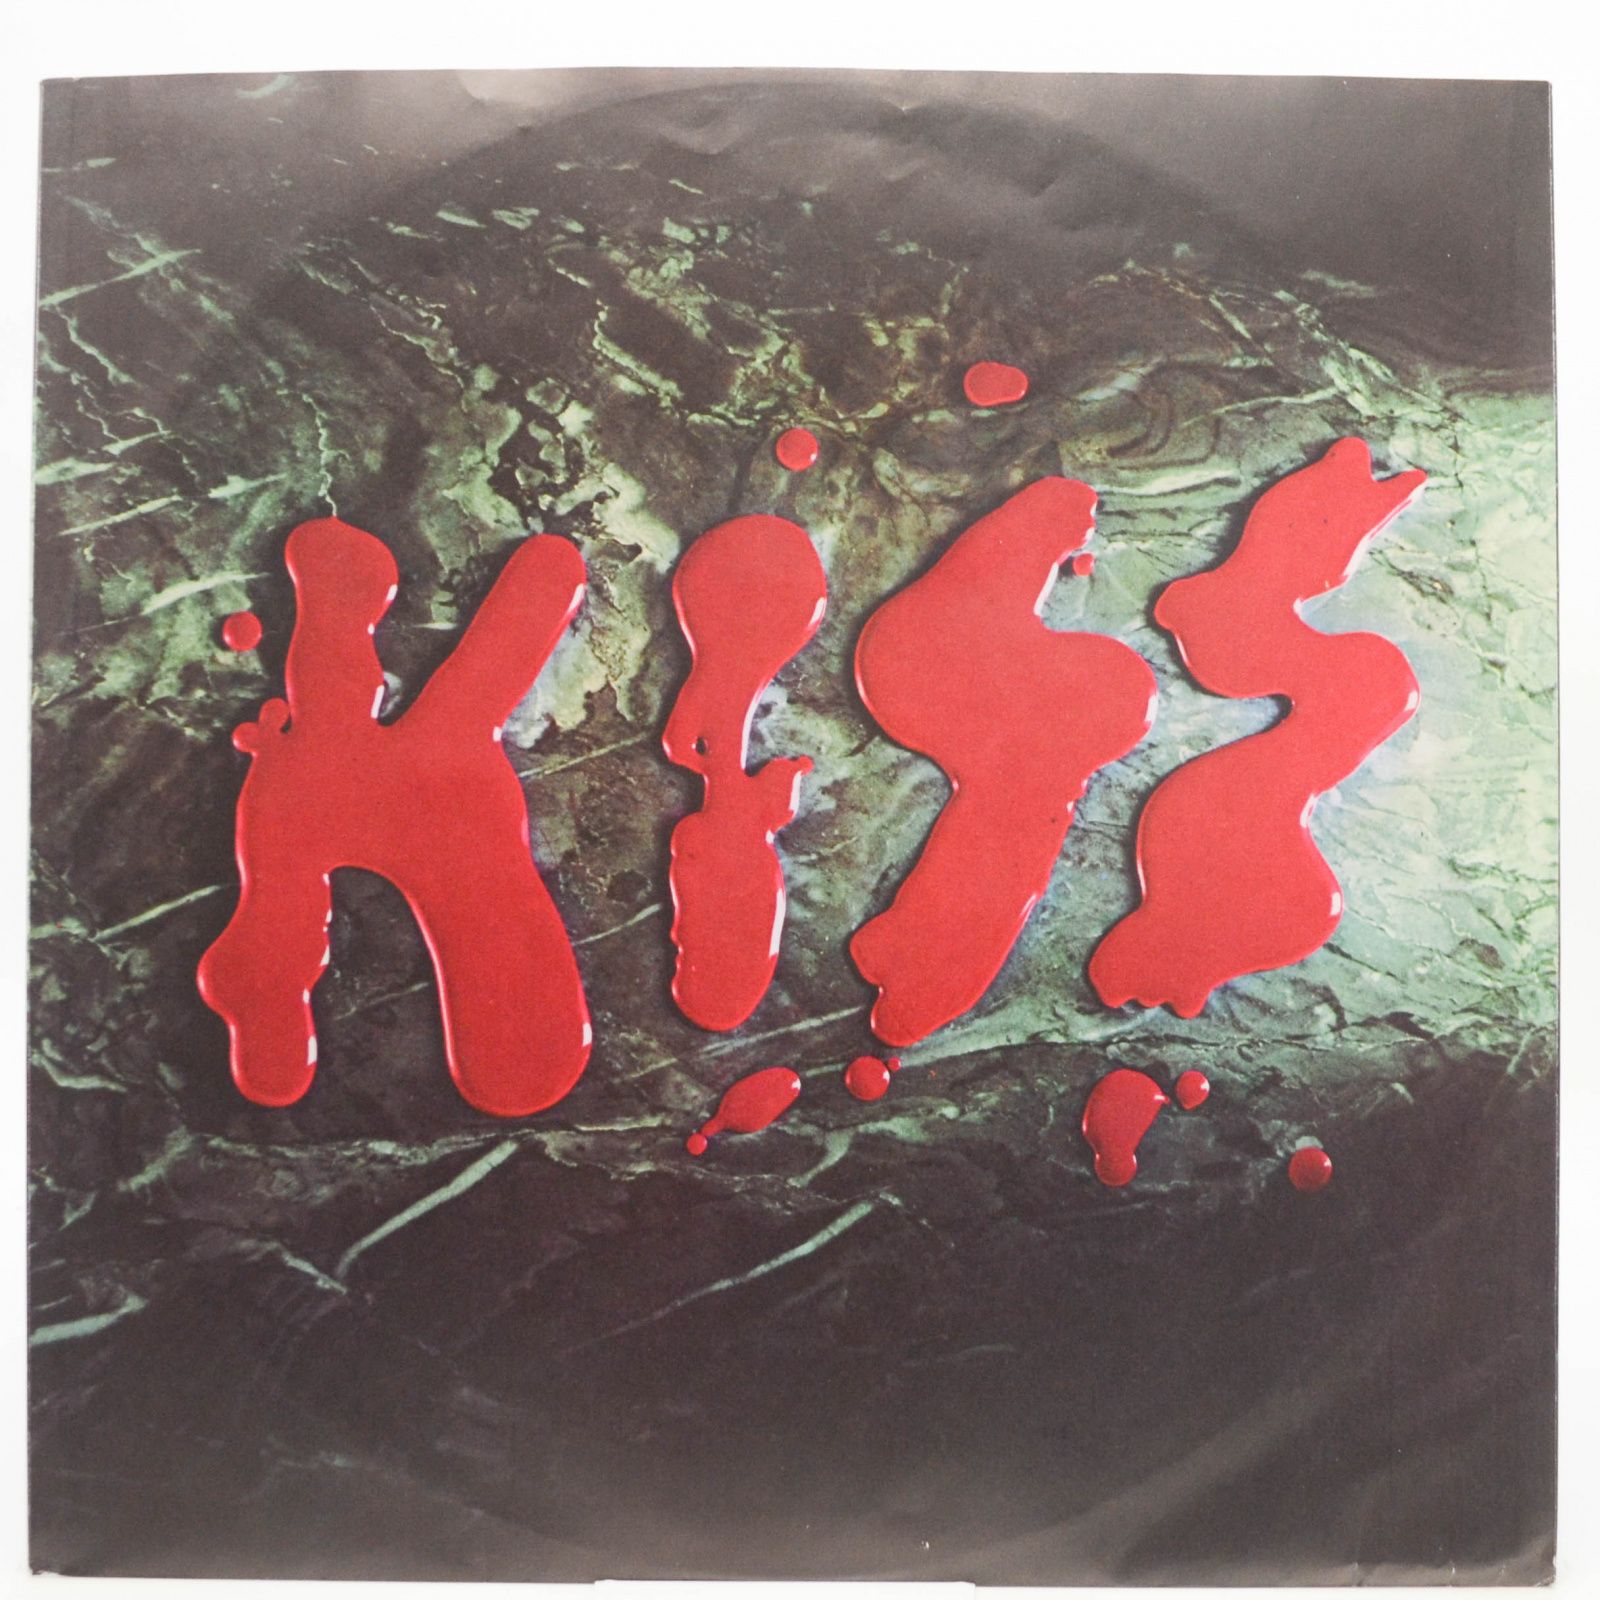 Kiss — Love Gun, 1977